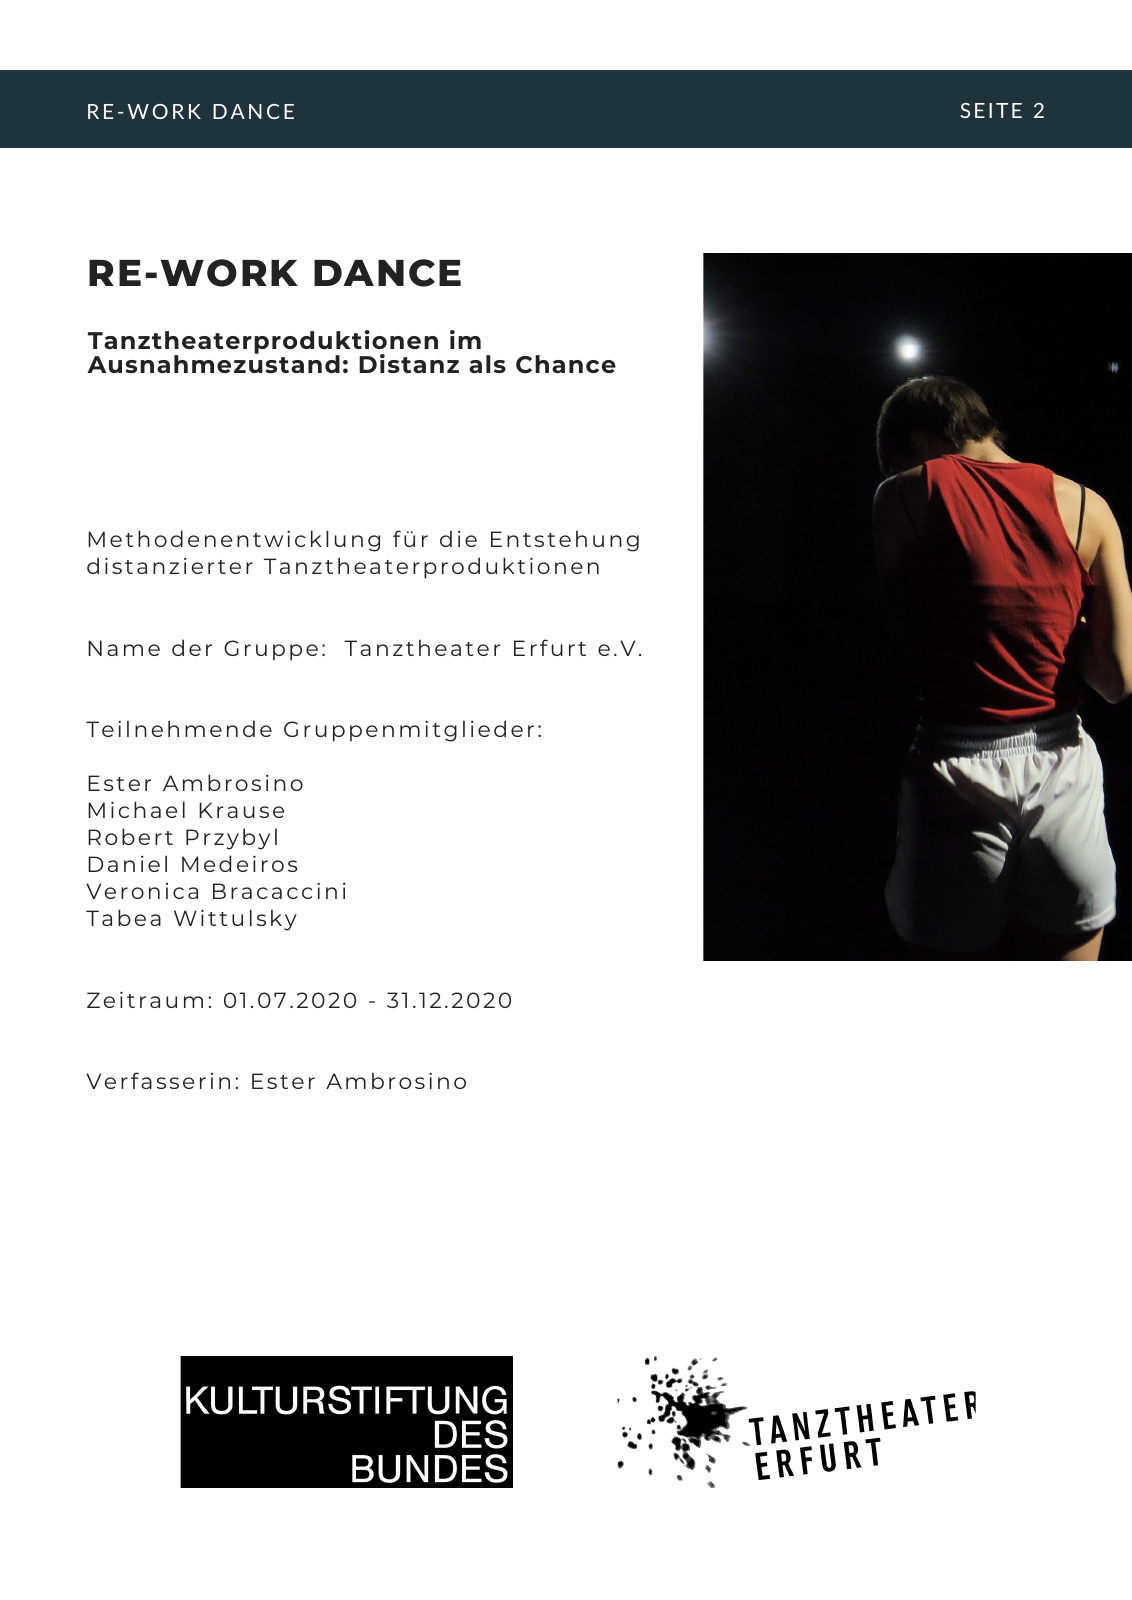 Vorschau RE-WORK DANCE Seite 2